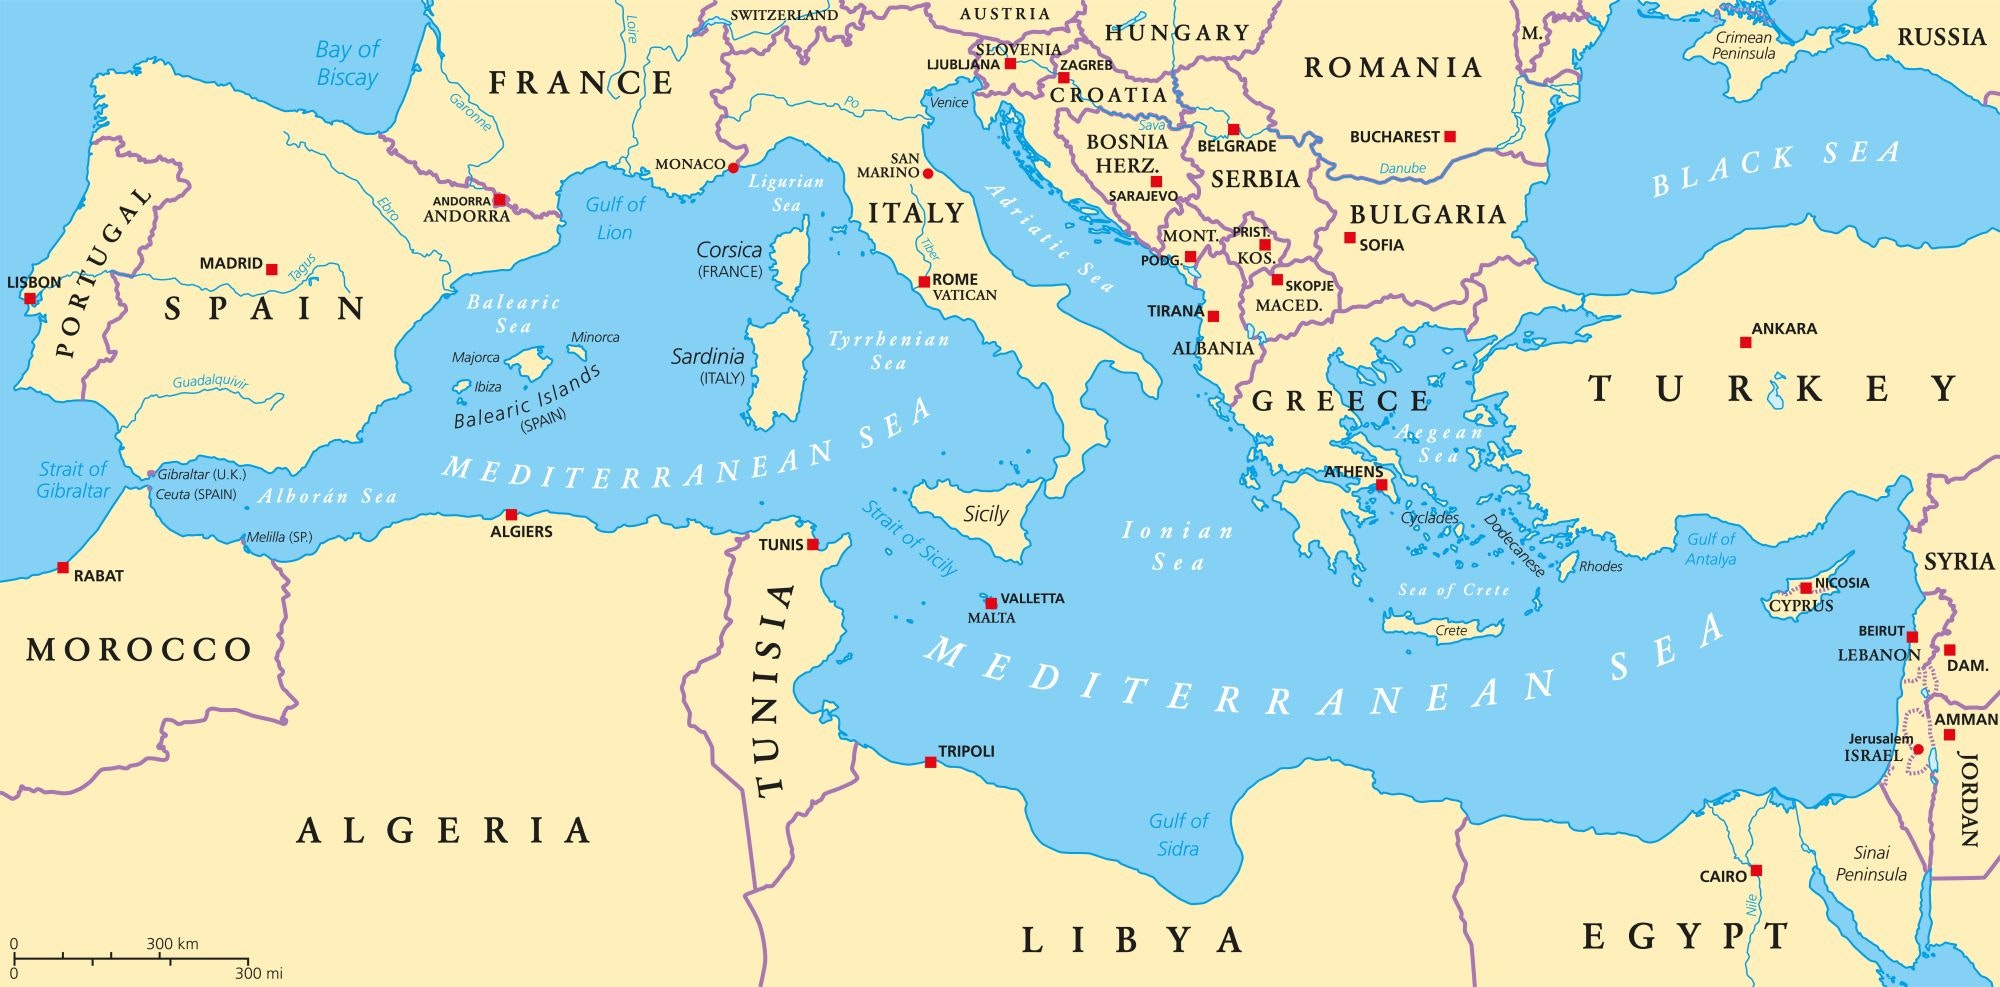 Térkép a Földközi-tengerről és a környező területekről